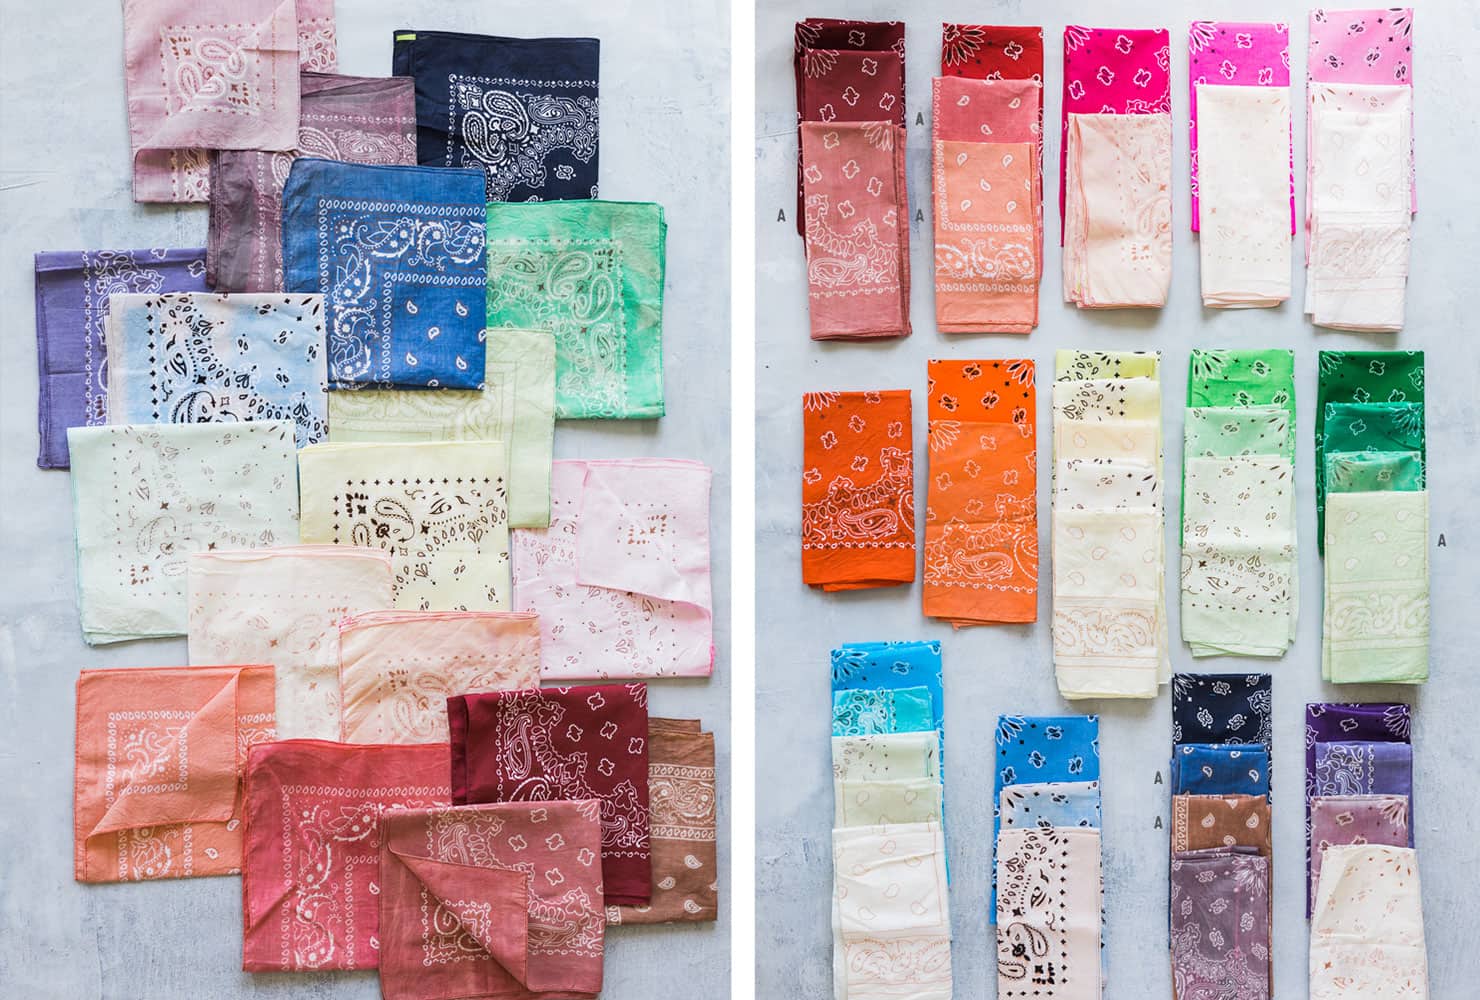 creative gift ideas dyed handkerchiefs width=